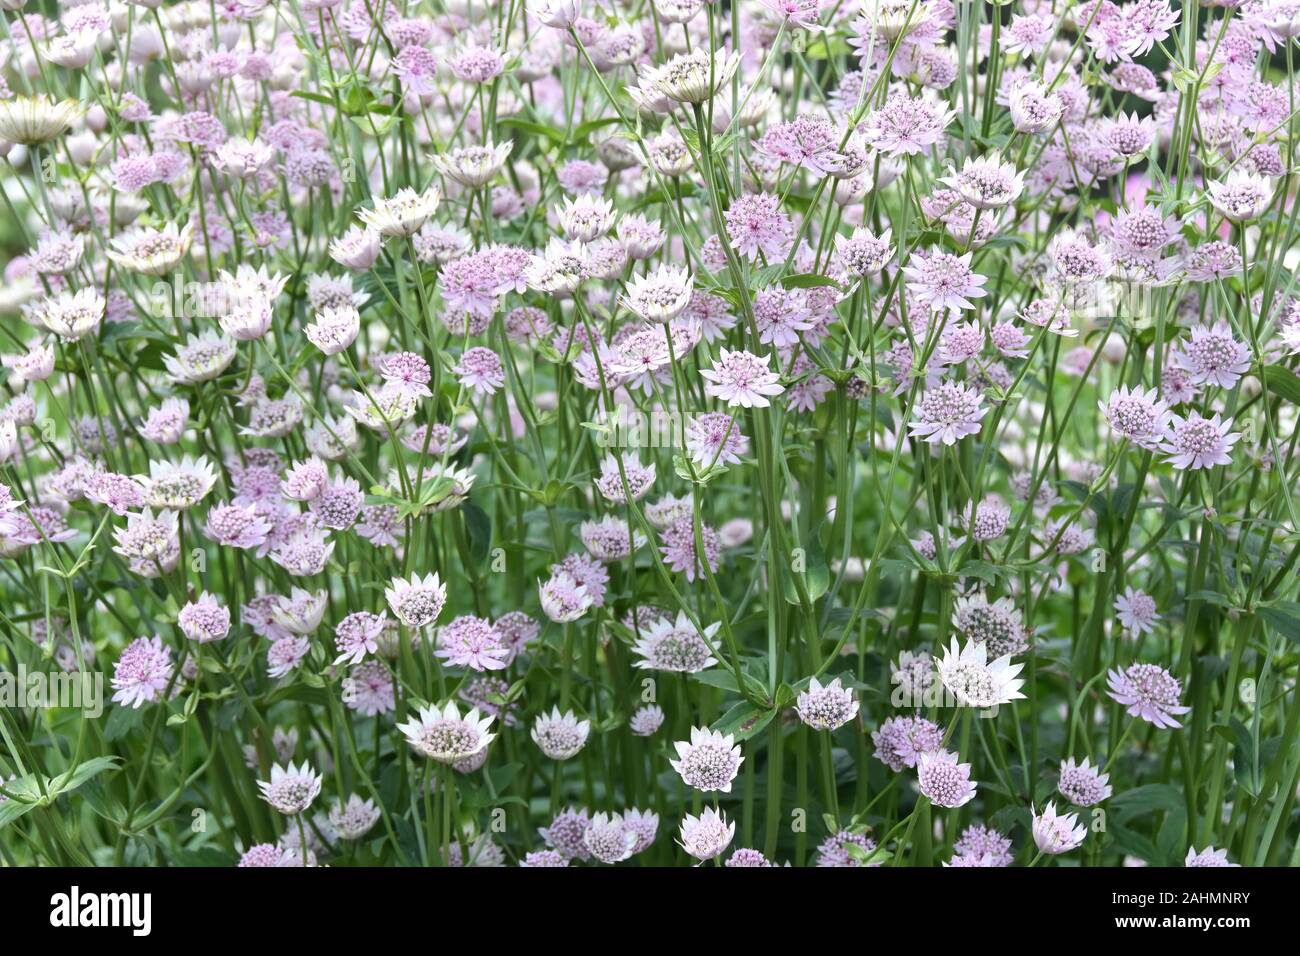 Big group of Great masterwort Astrantia major flowering in a garden Stock Photo